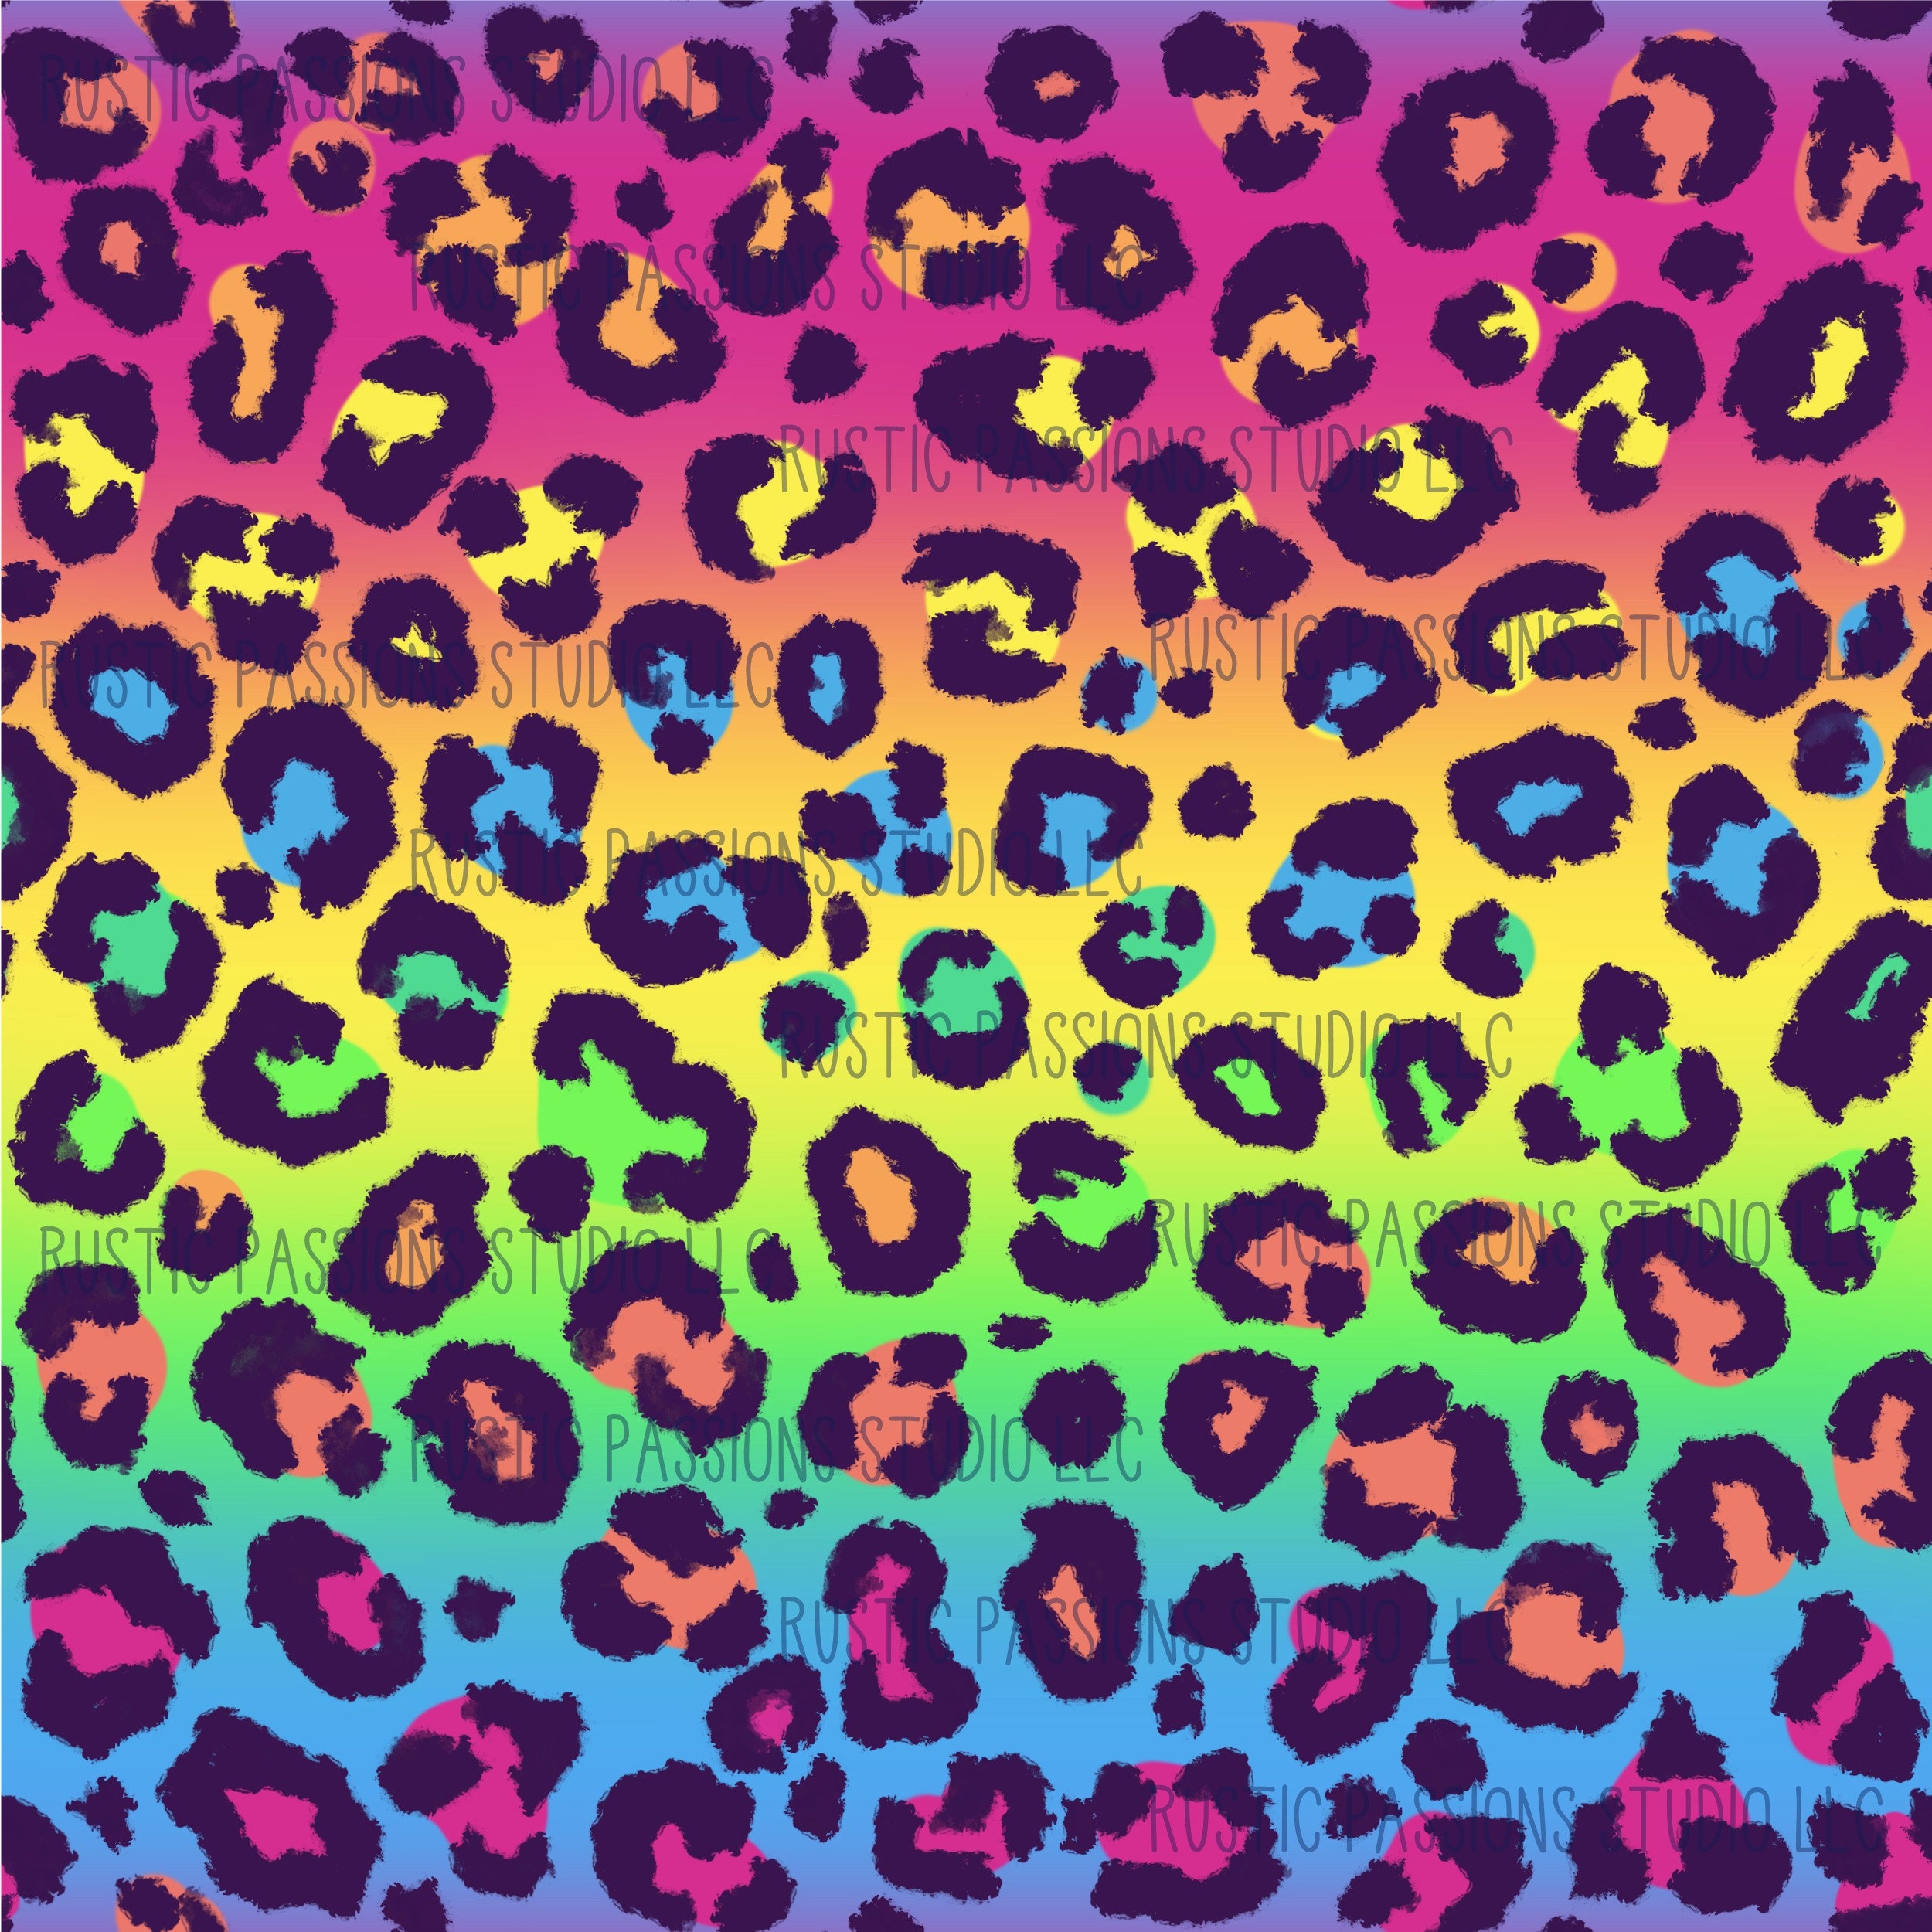 Neon Leopard brush strokes – V&M Prints